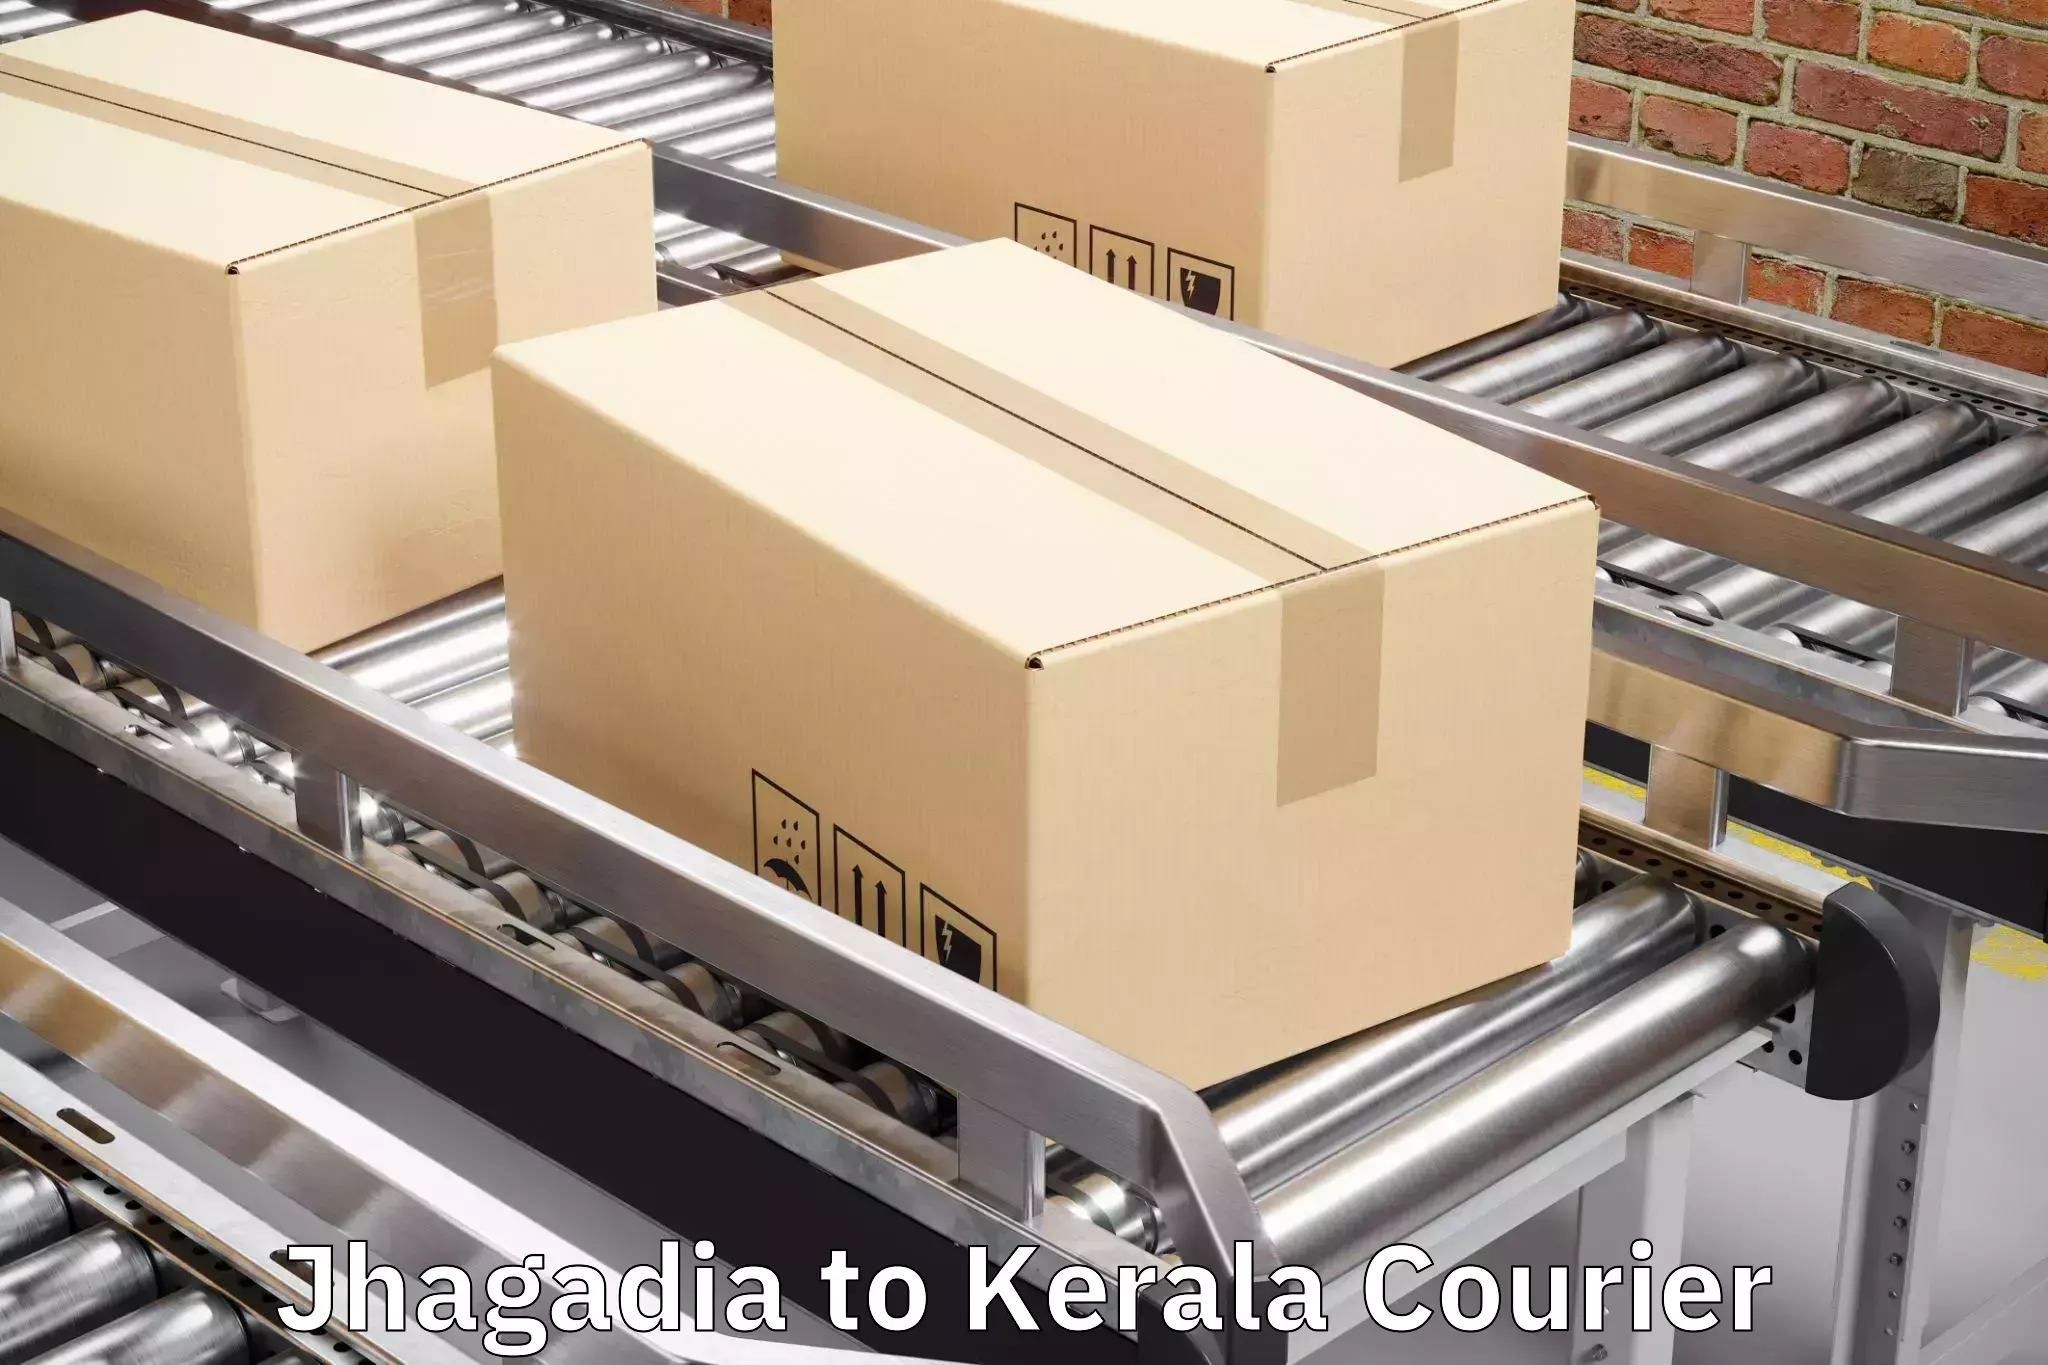 Baggage handling services Jhagadia to Palakkad